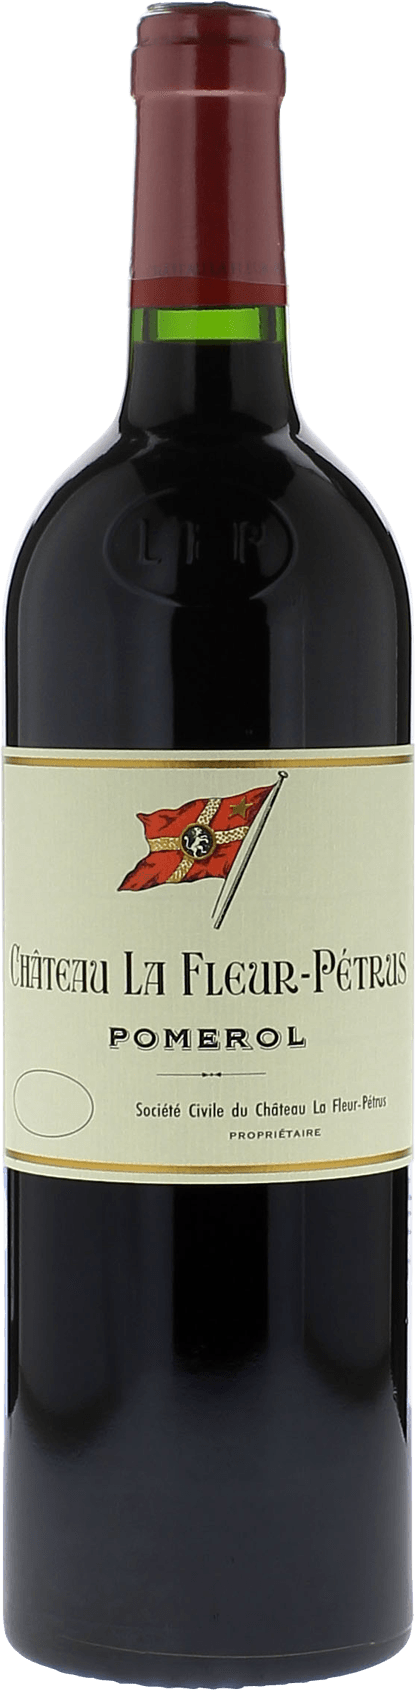 La fleur petrus 1988  Pomerol, Bordeaux rouge